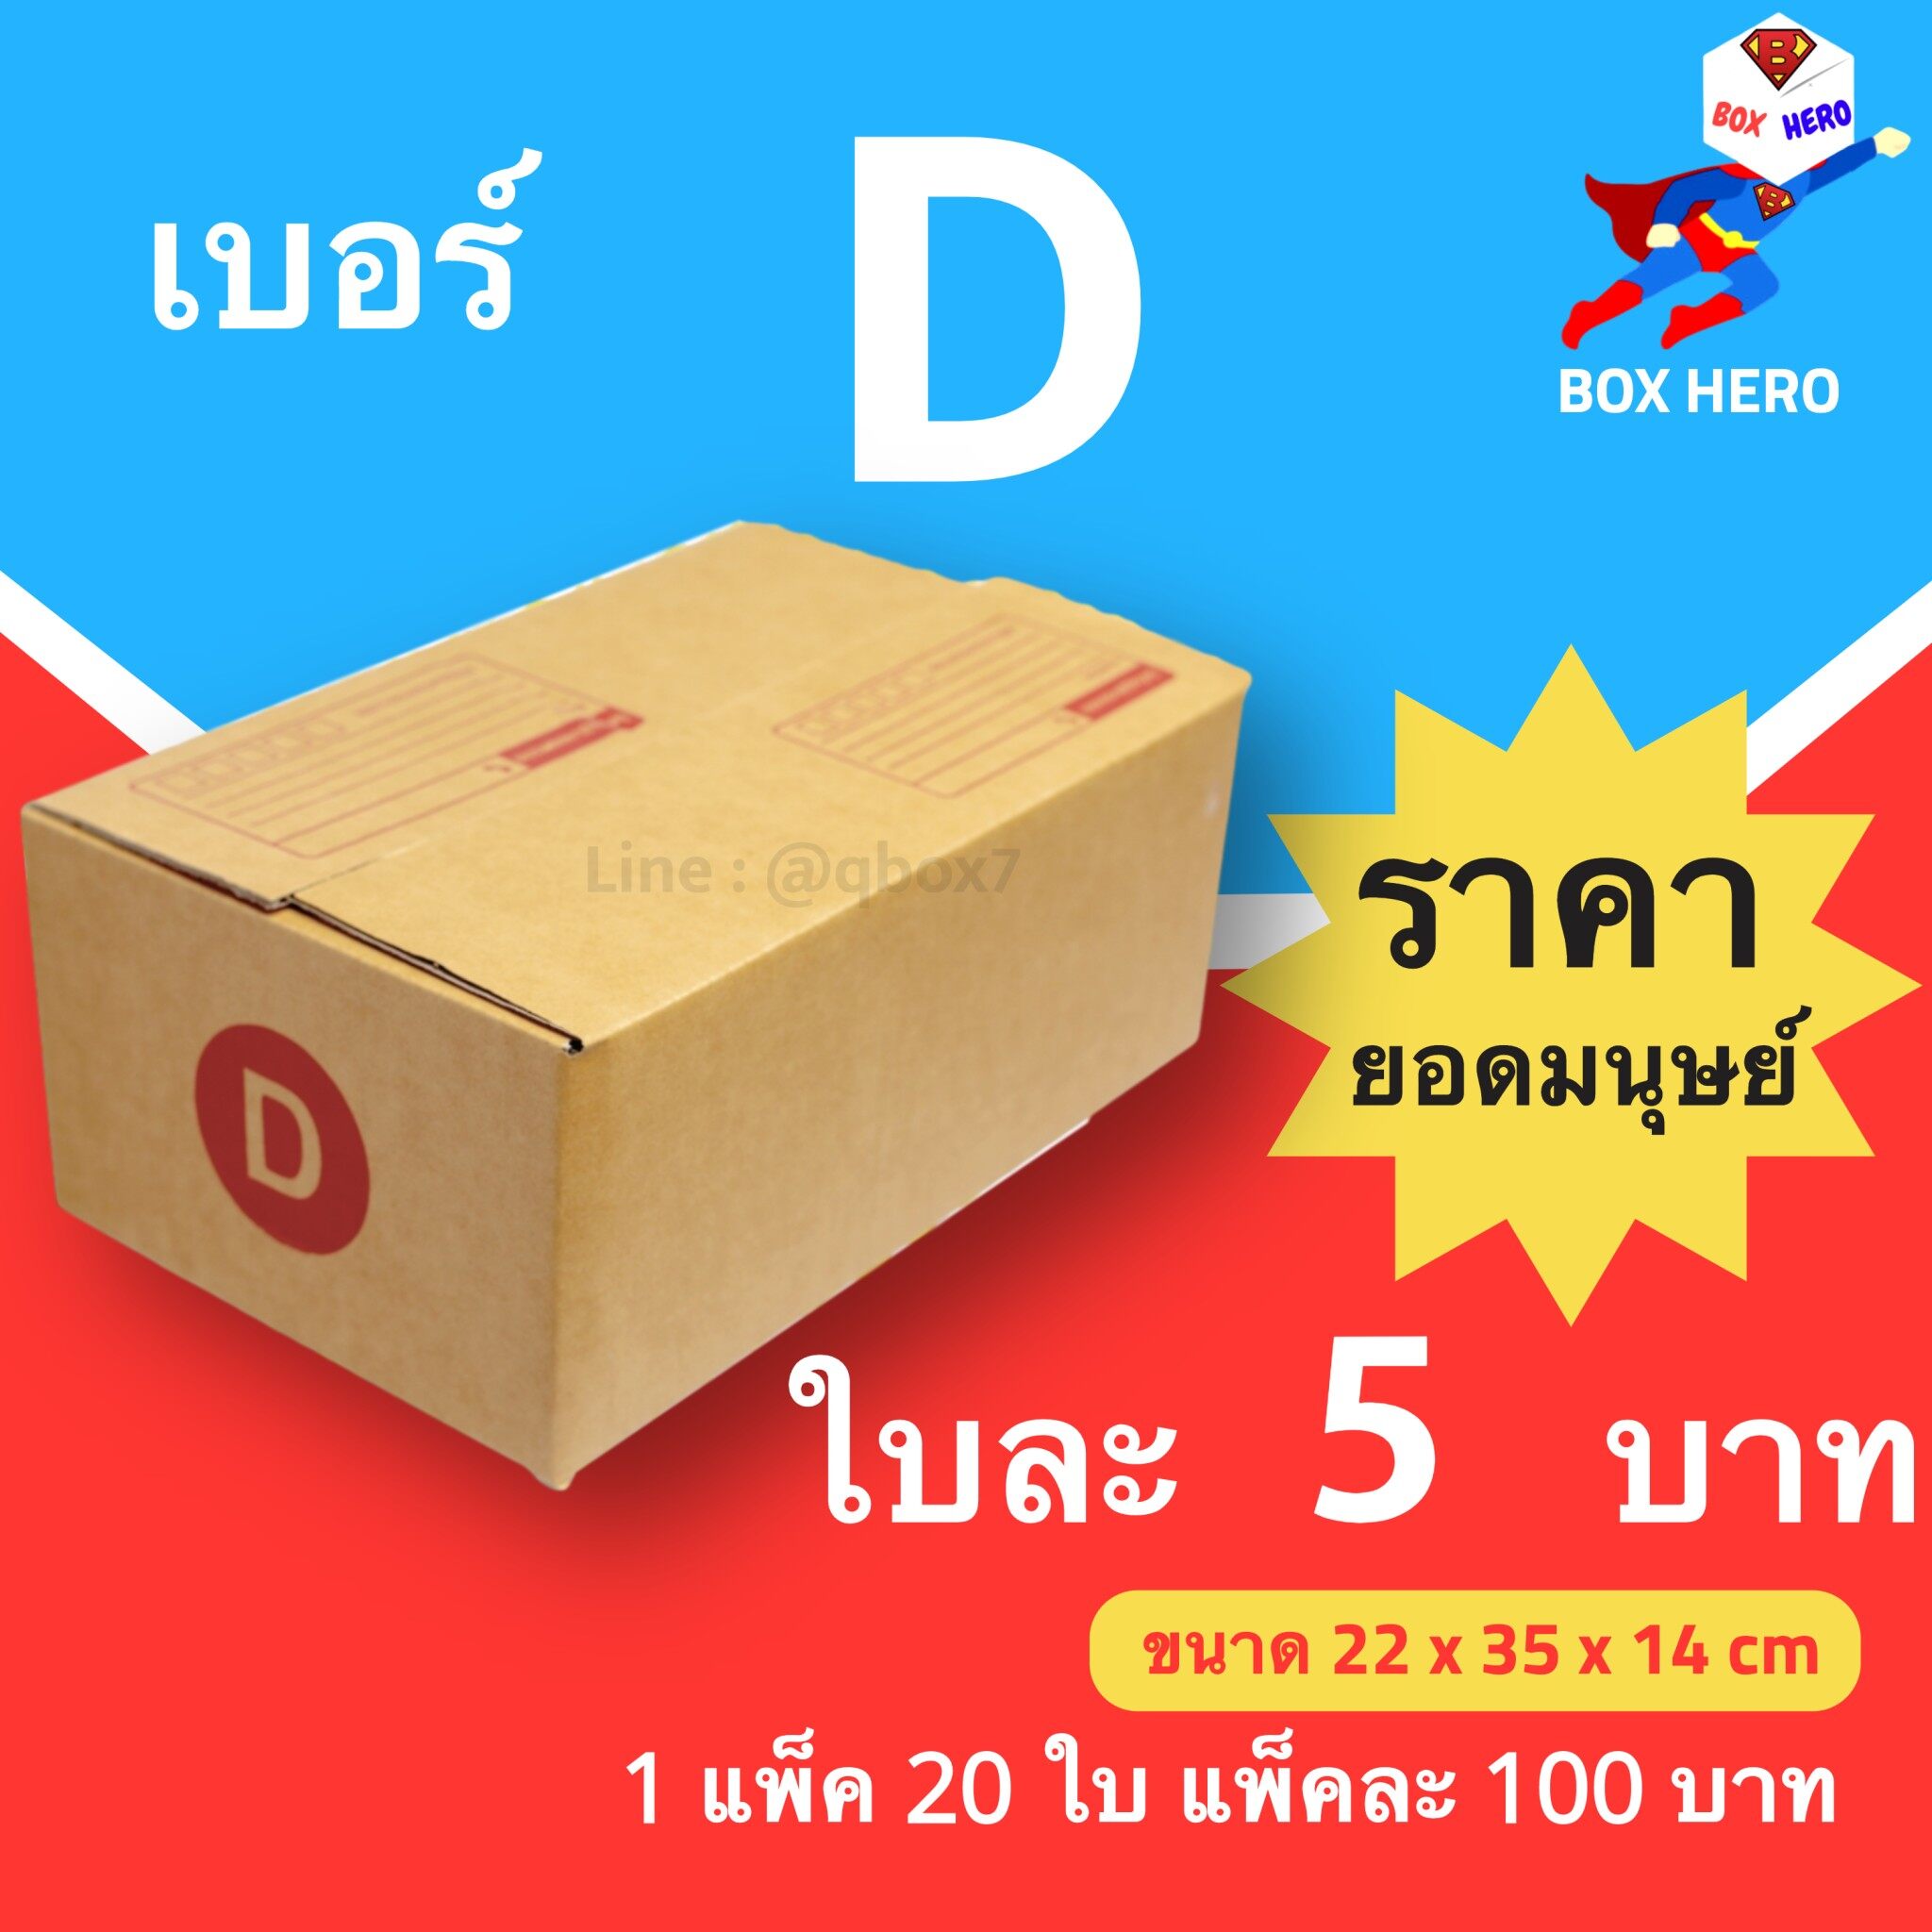 BoxHero กล่องไปรษณีย์เบอร์ D มีพิมพ์จ่าหน้า กล่องพัสดุ (20 ใบ 100 บาท)